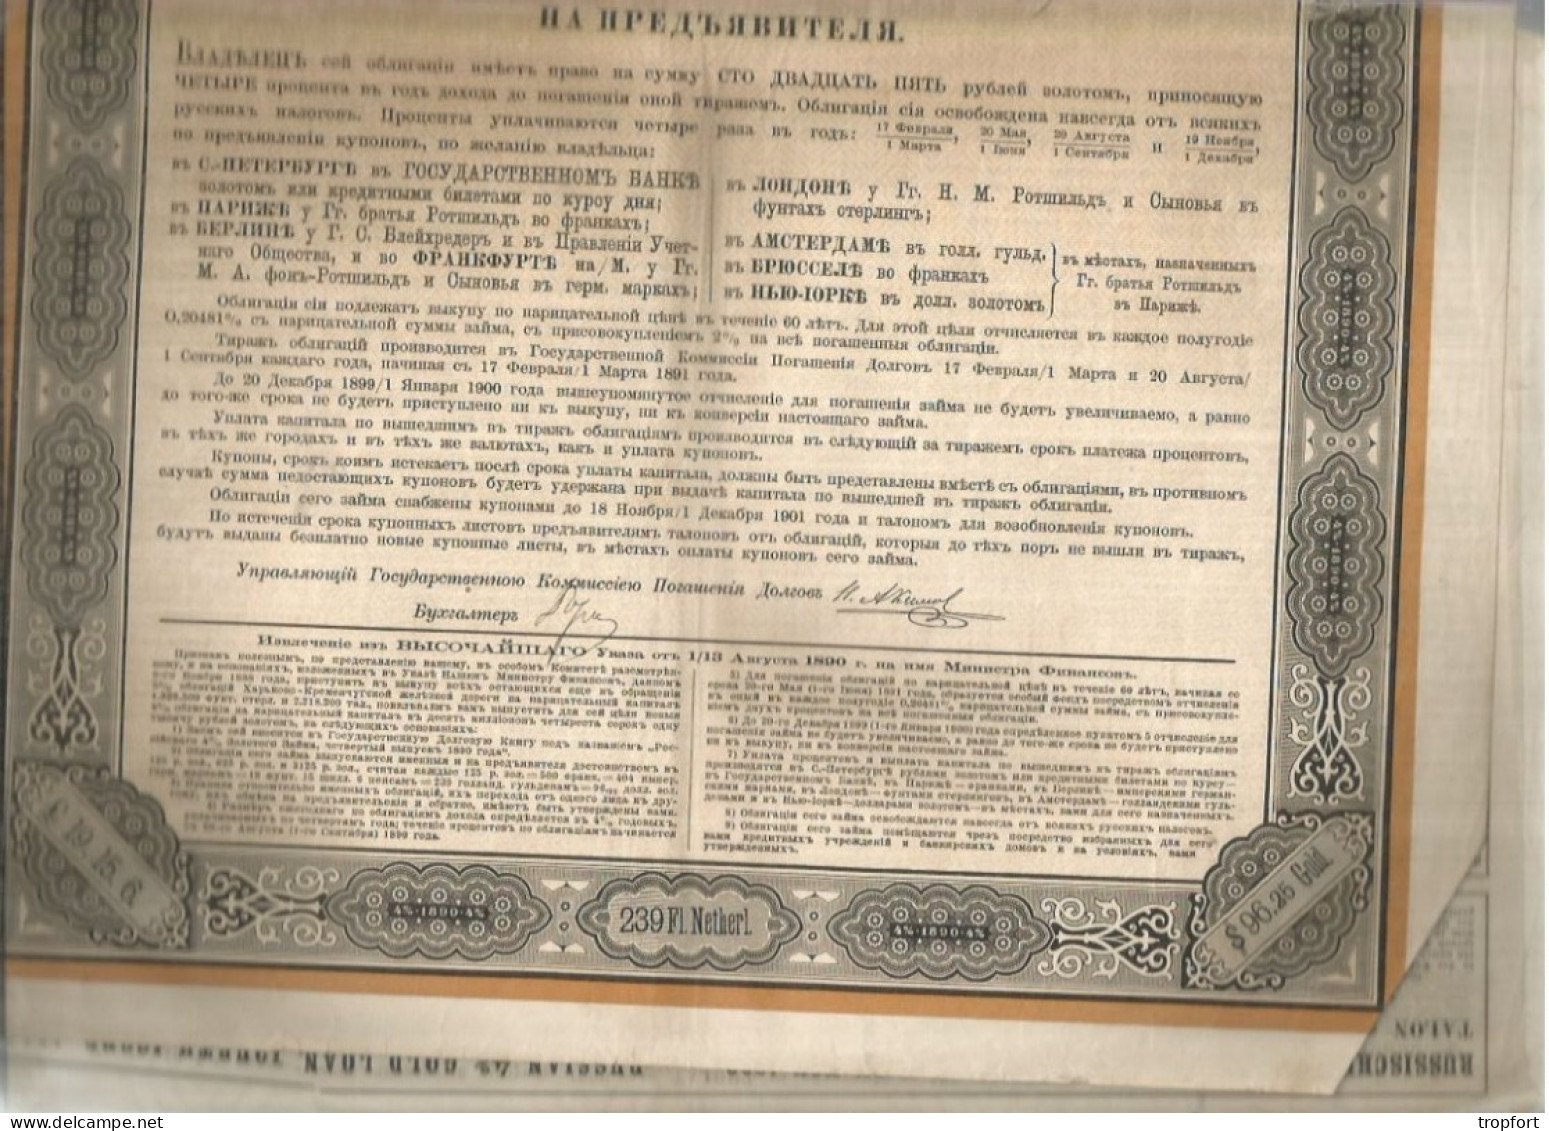 Gt Impérial De Russie Emprunt Russe 4% OR  4ème Émission 1890 --------- Obligation De 125 Roubles OR - Russia